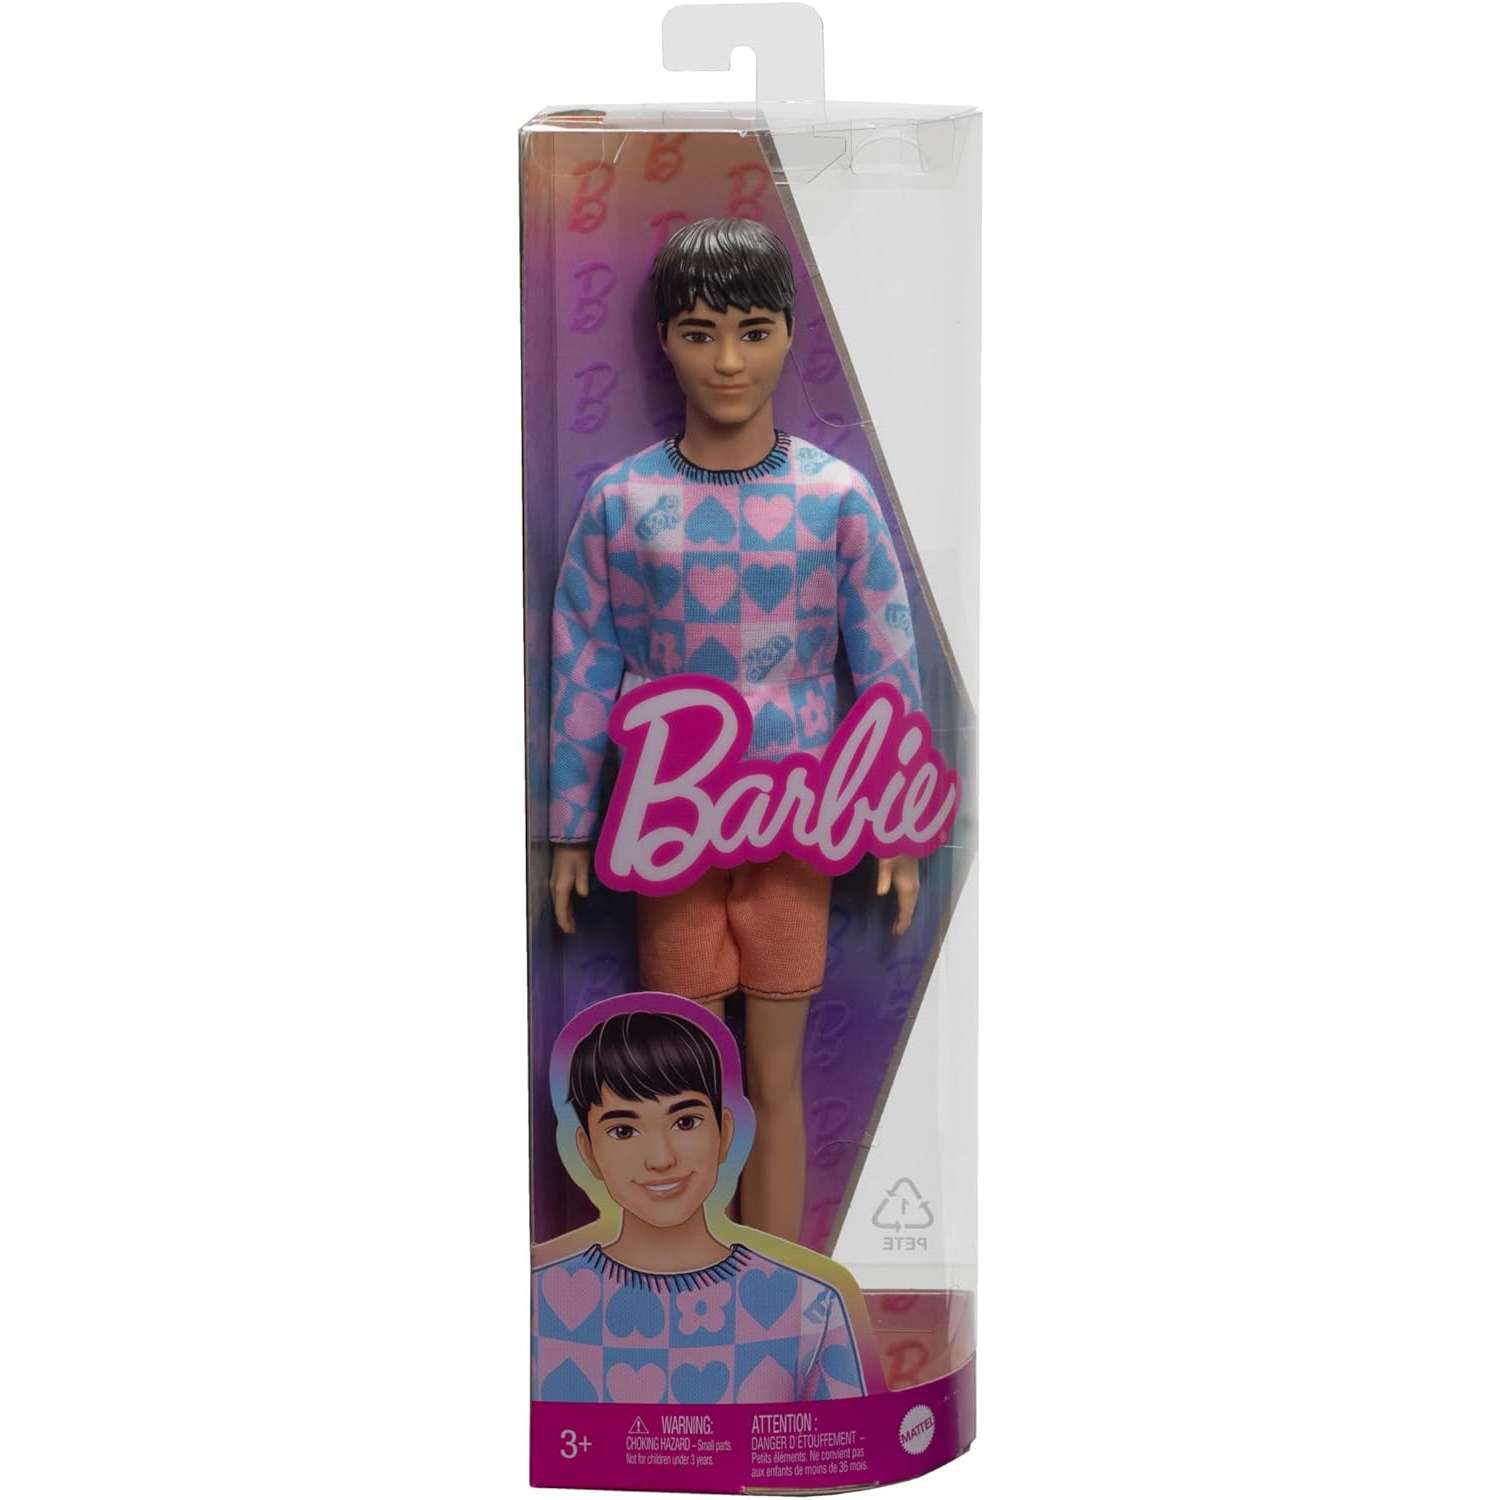 Кукла Barbie Fashionista Ken голубой и розовый свитер HRH24 HRH24 - фото 6